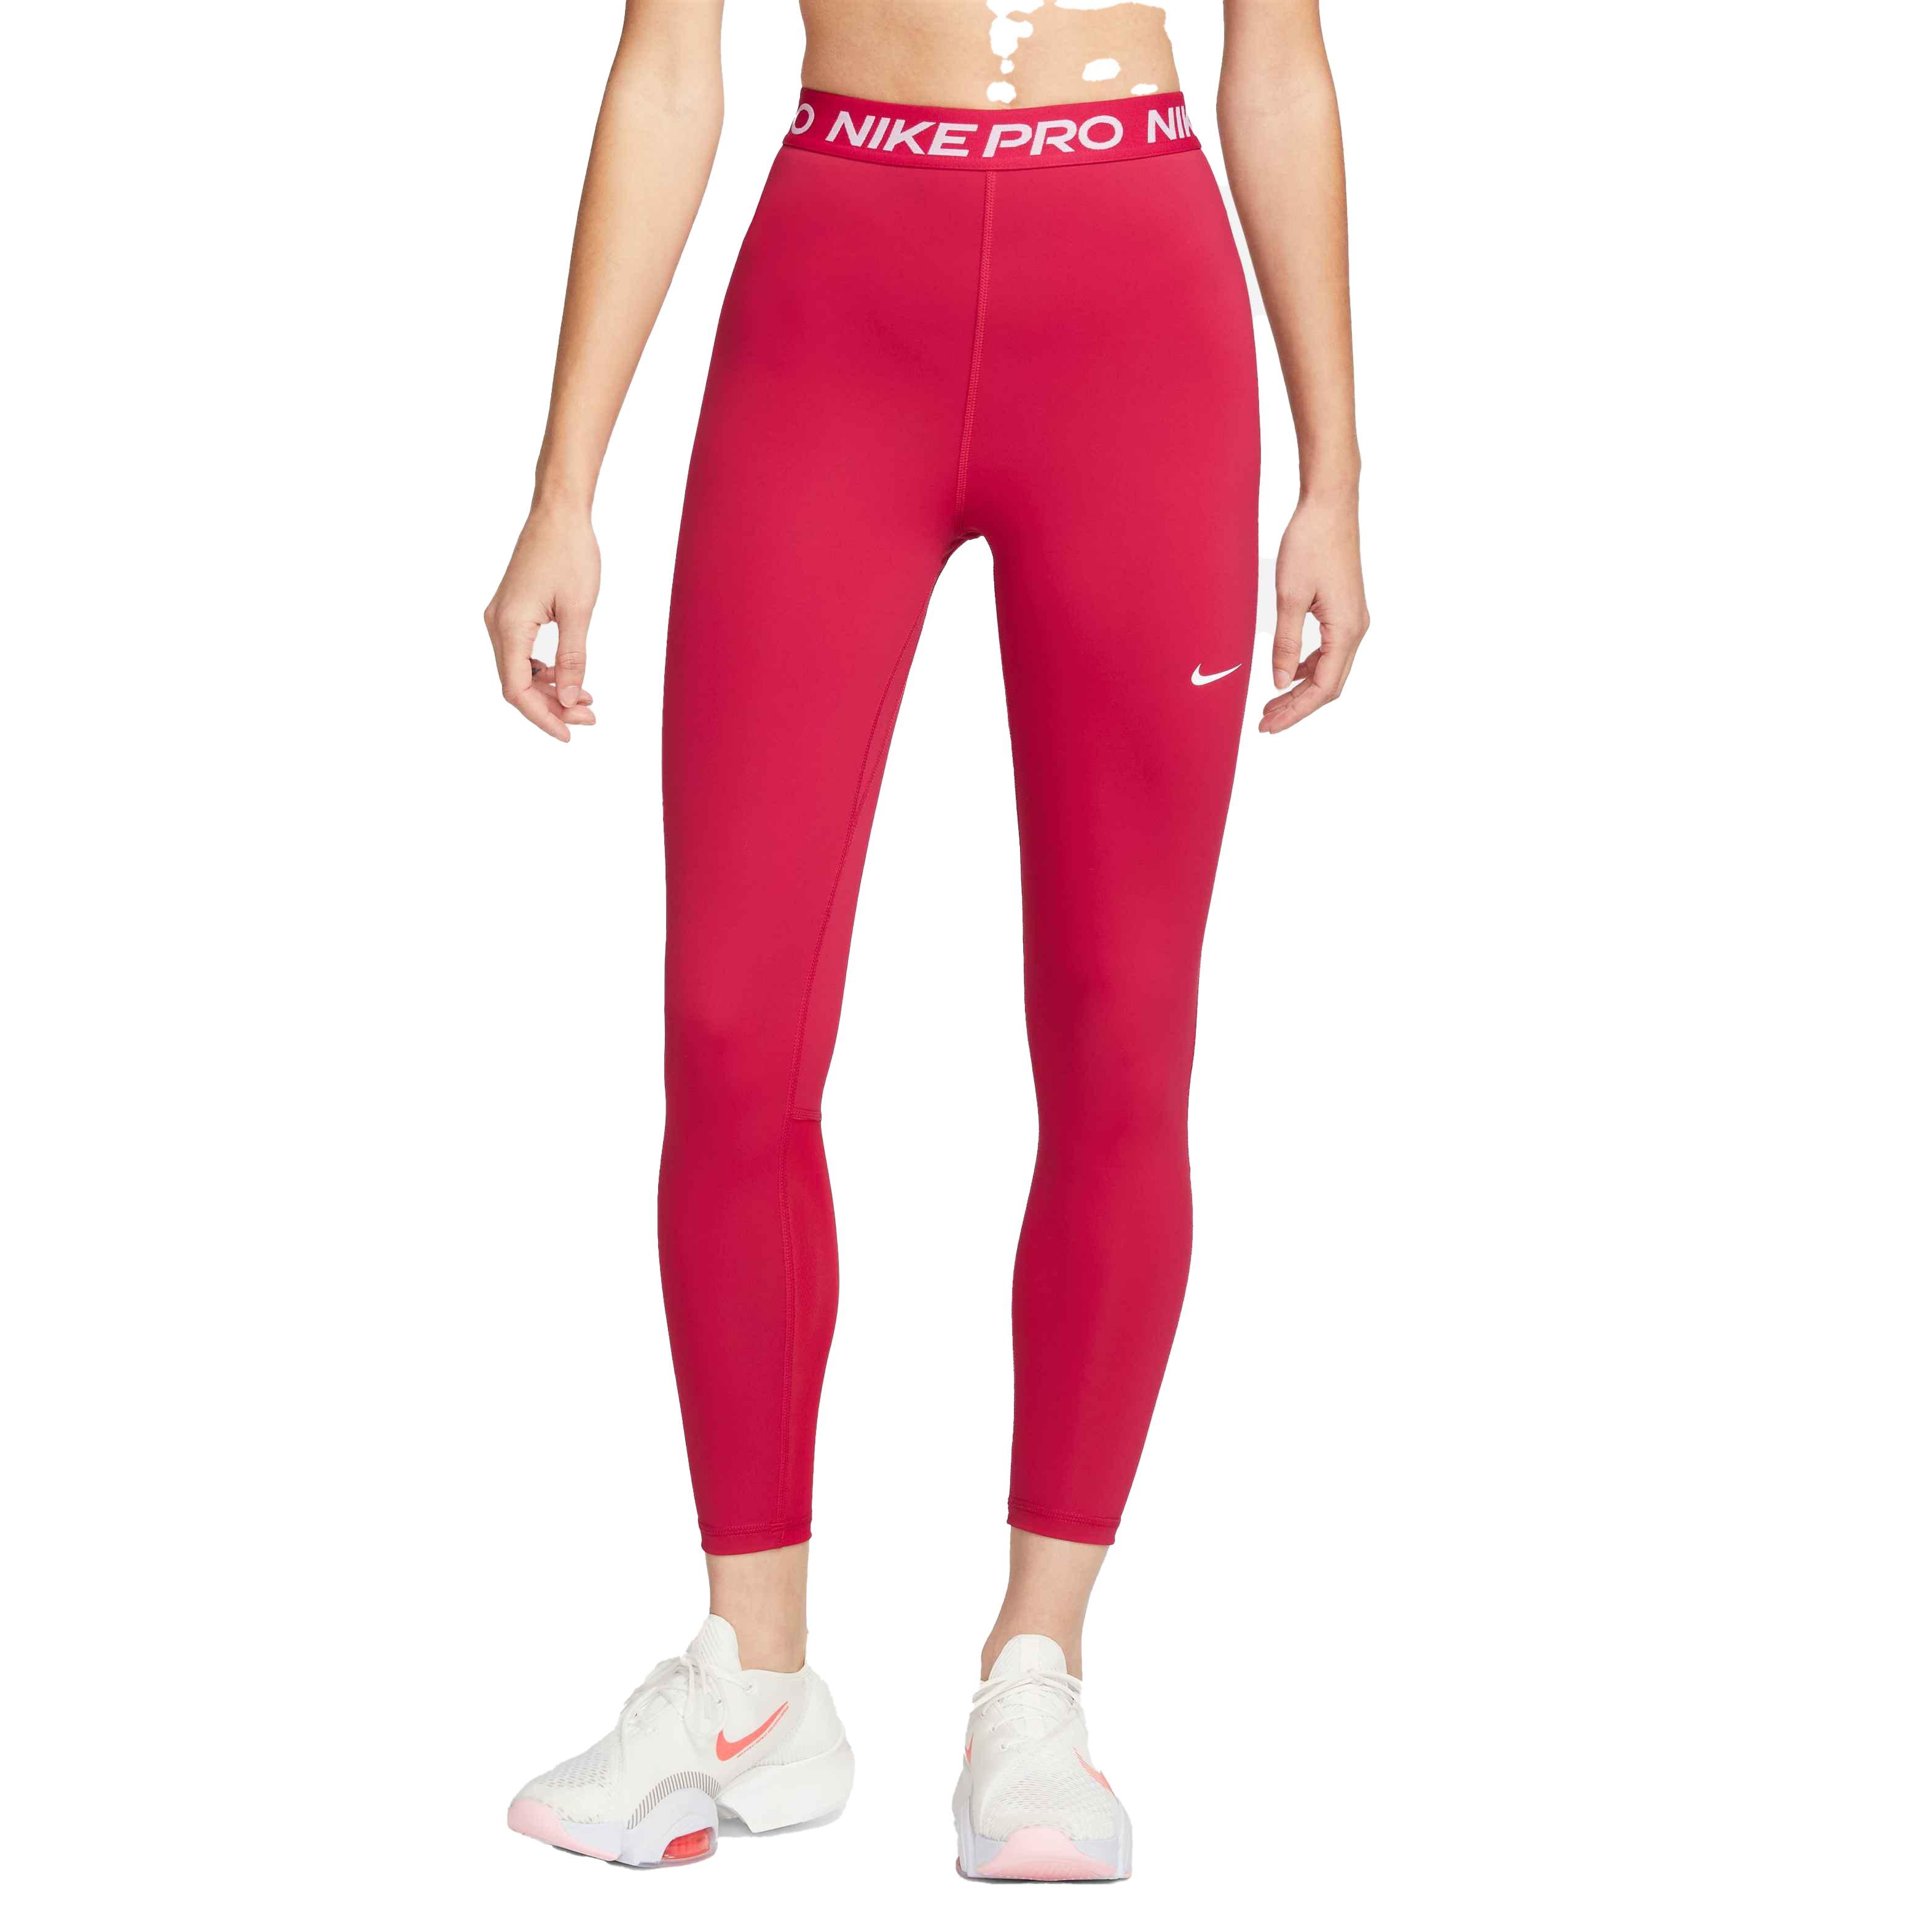 Women's leggings Nike Pro 365 Tight - active fuchsia/white, Tennis Zone